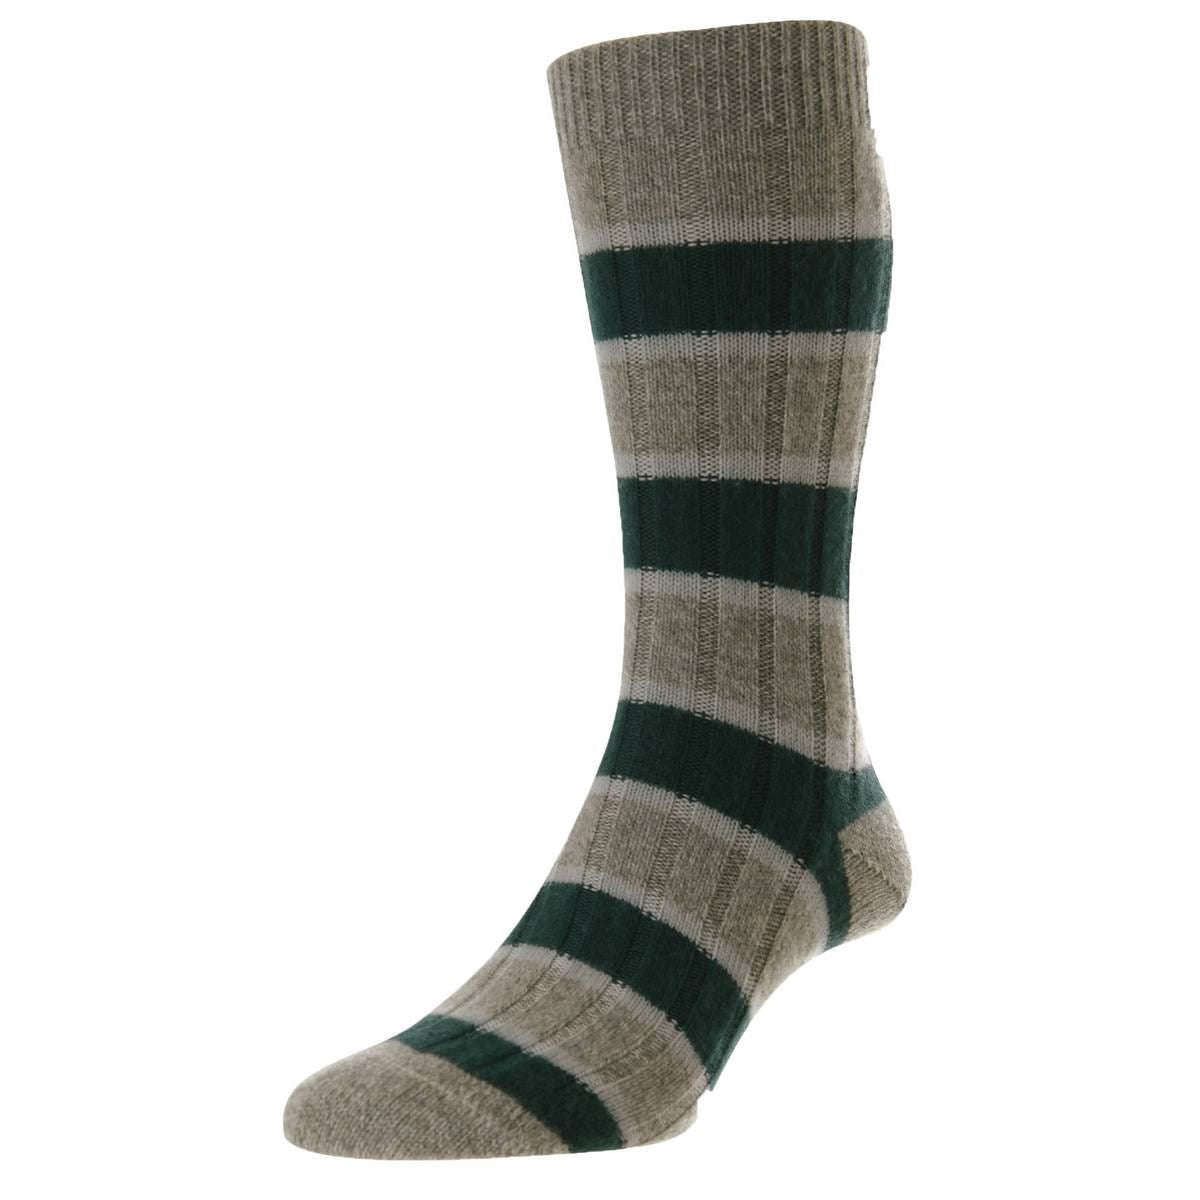 Pantherella Stalbridge Cashmere Socks - Moss Green Chine